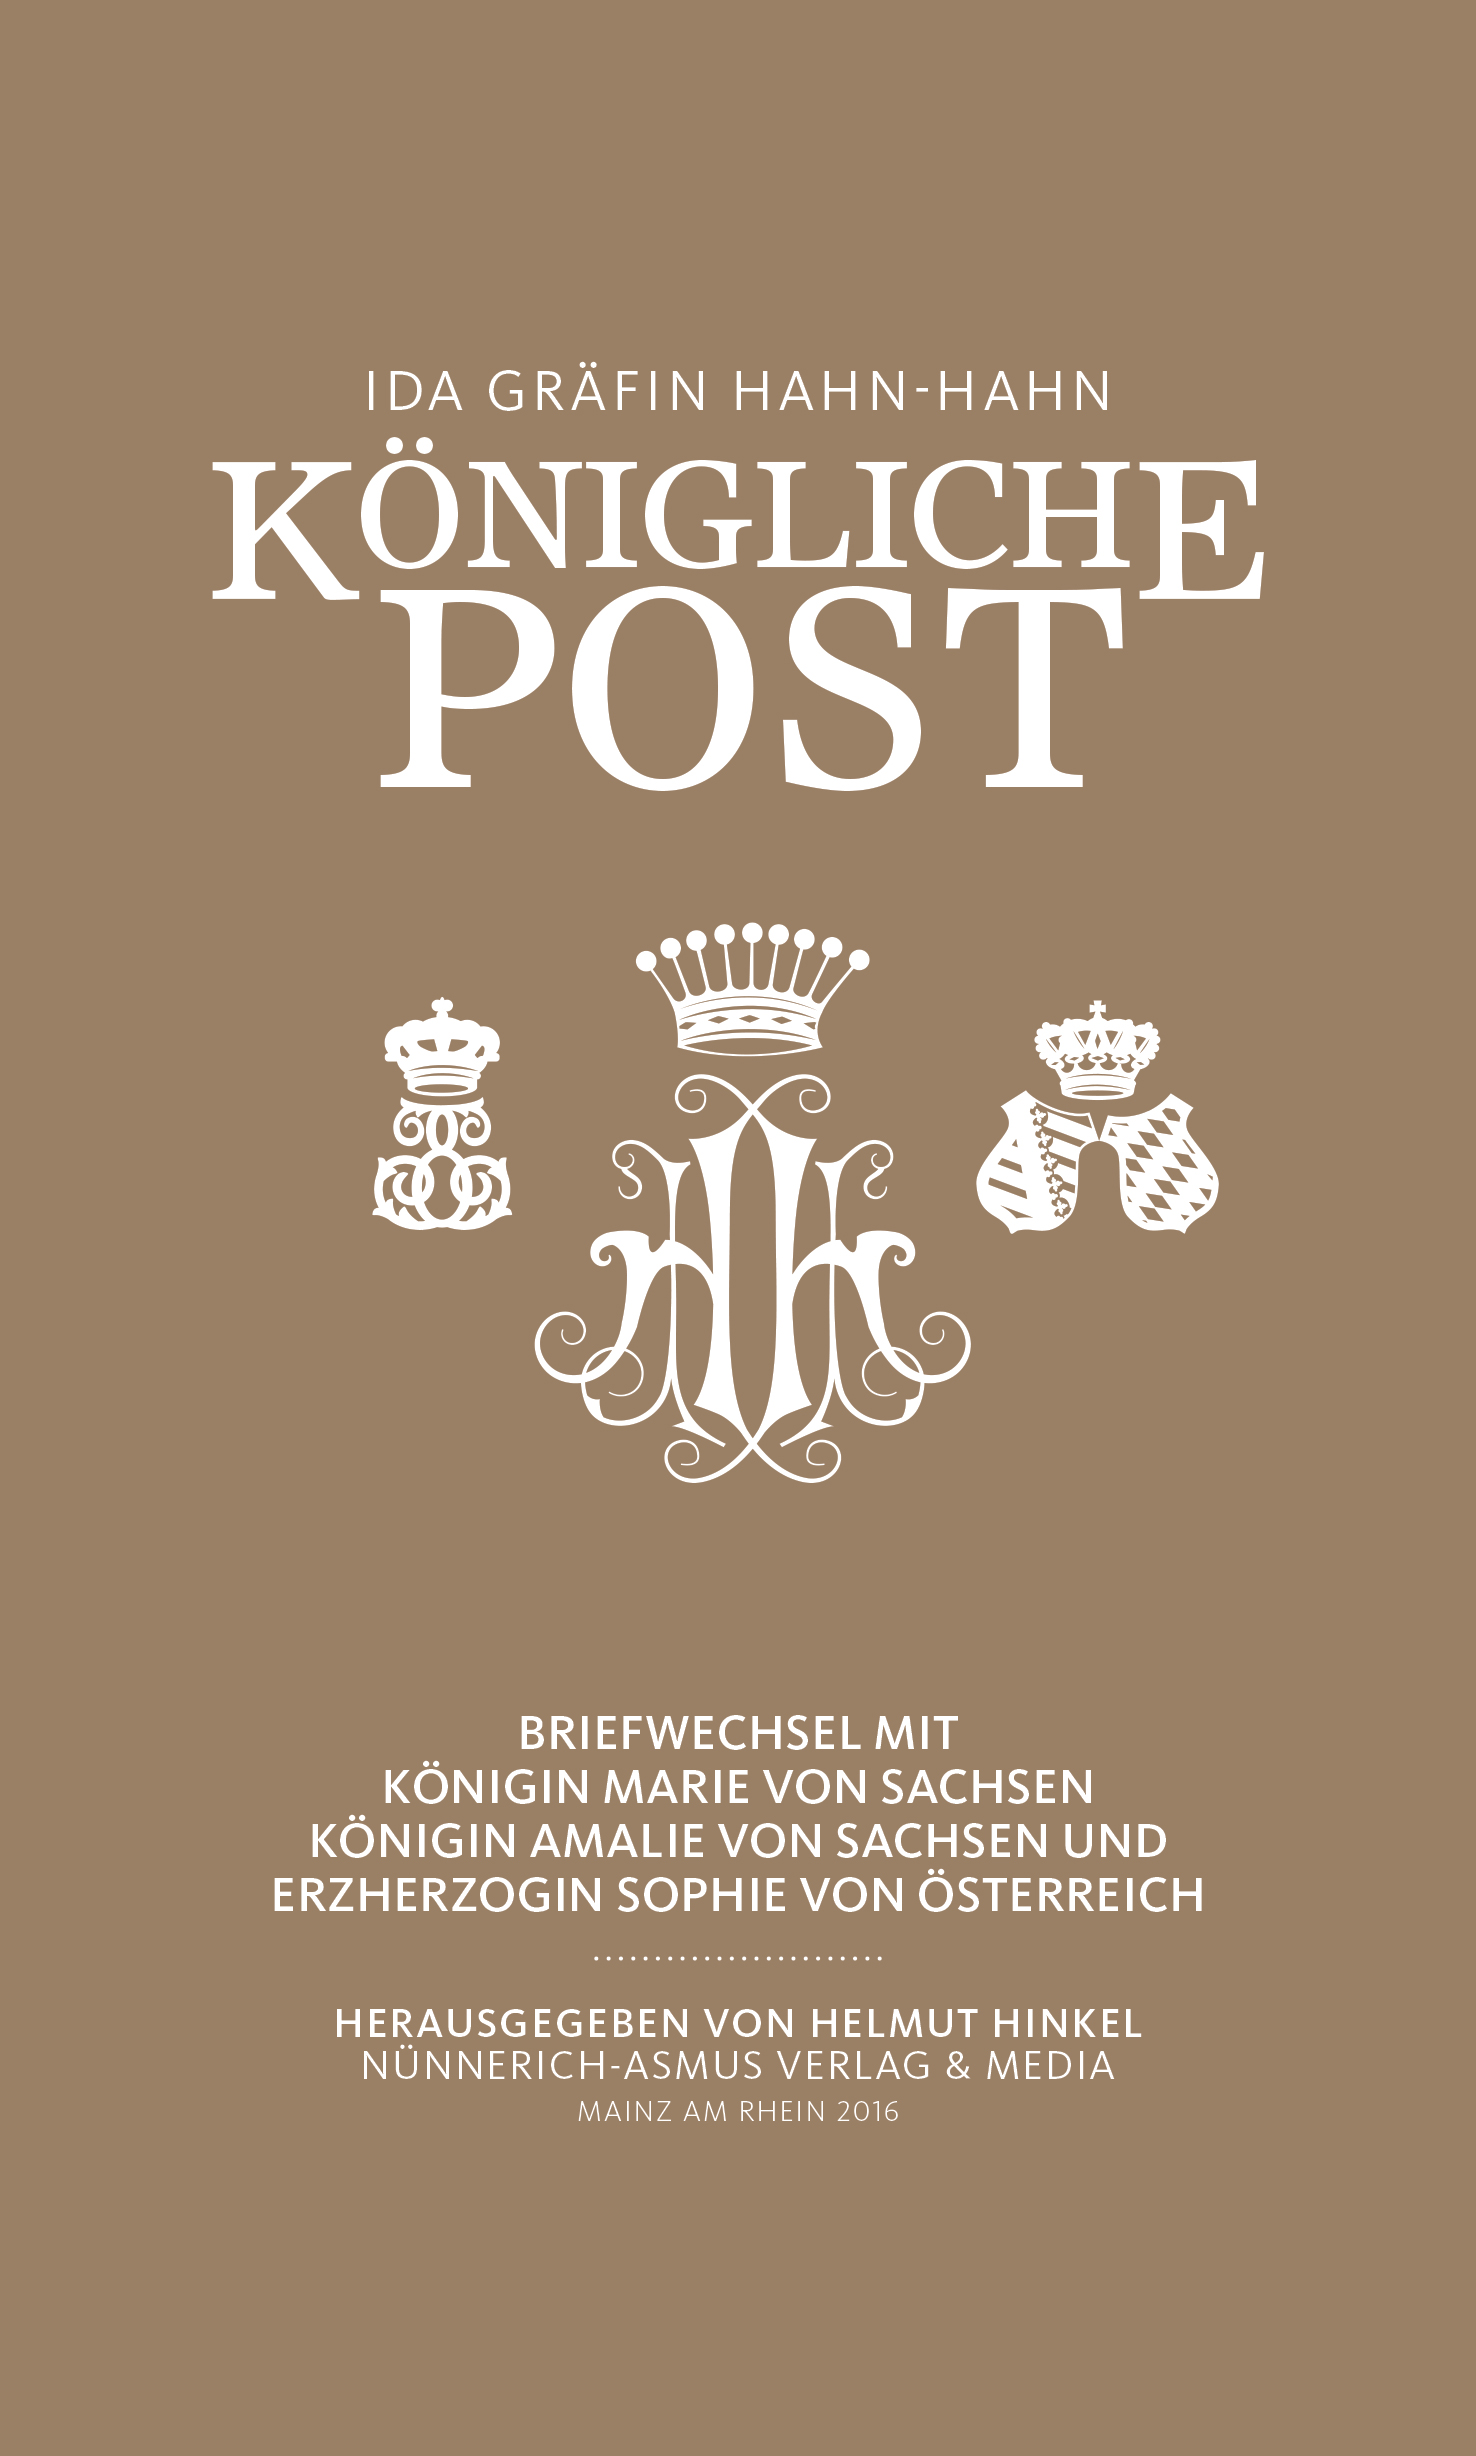 Königlicher Post (c) Nünnerich-Asmus-Verlag und Media